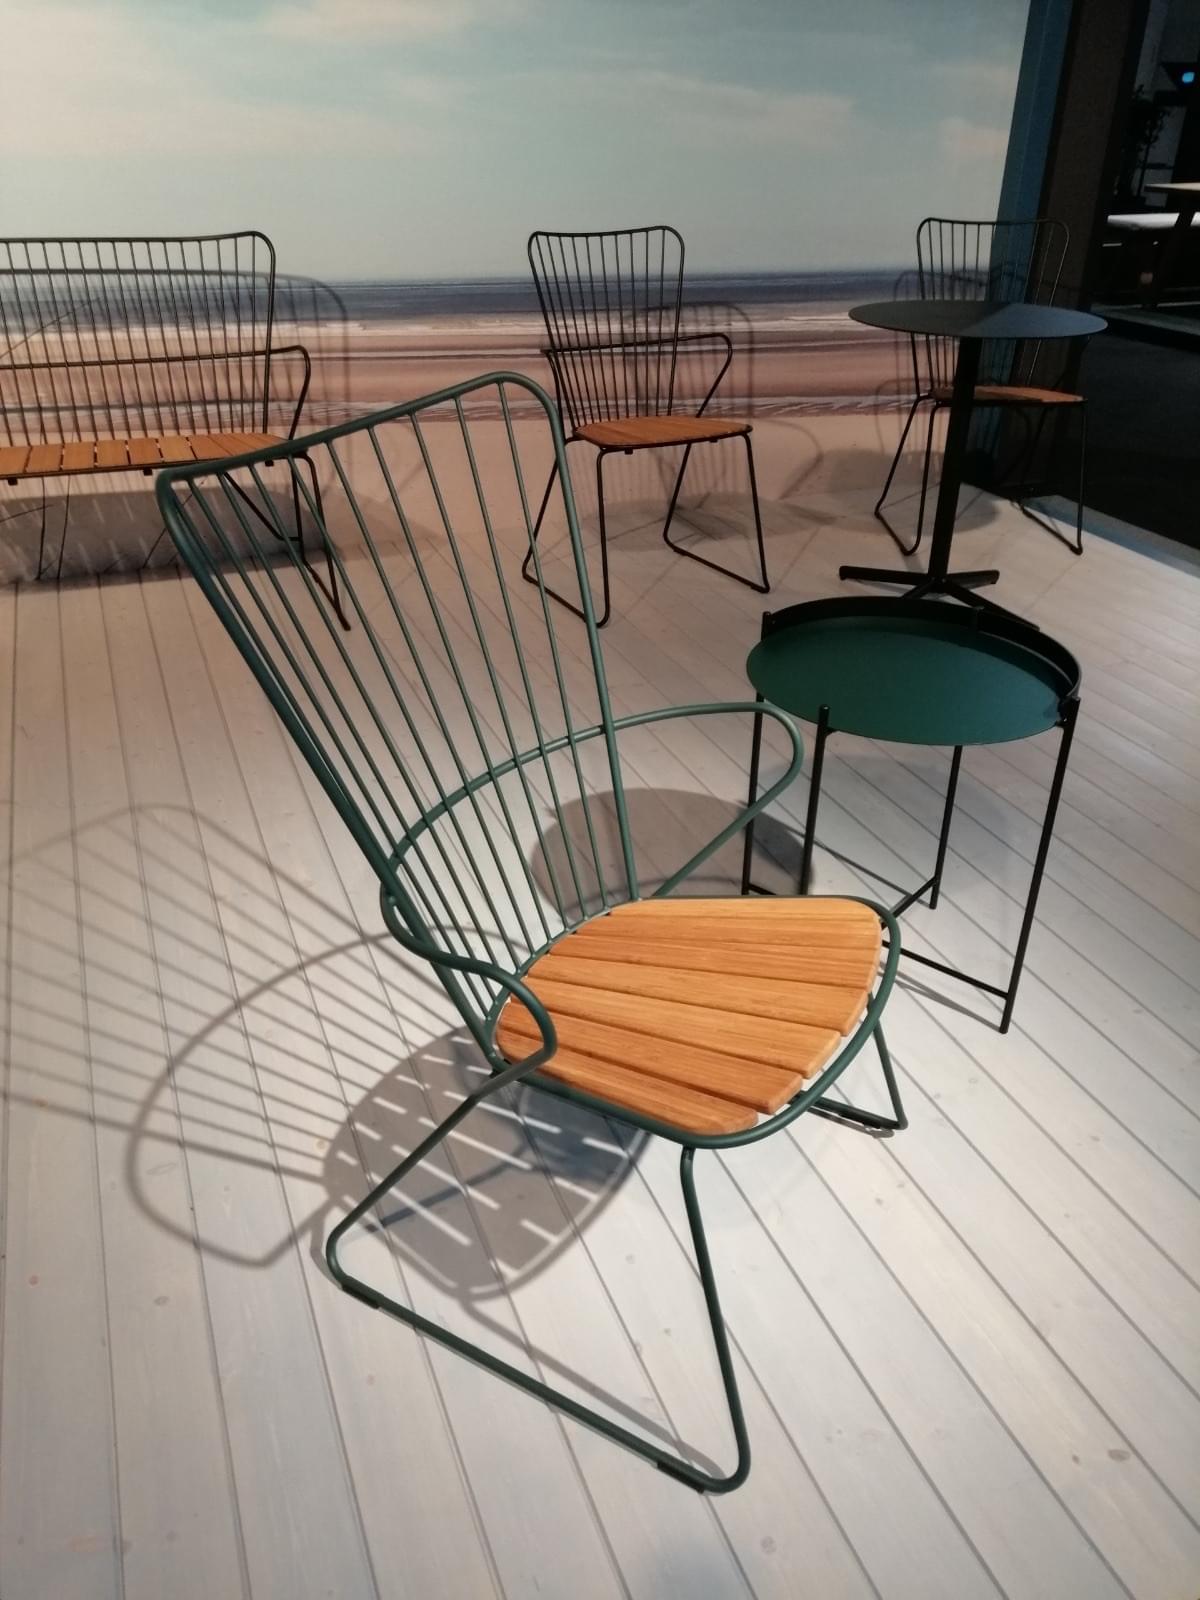 Outdoor-furniture-high-back-chair-metal-frame.JPG#asset:180268